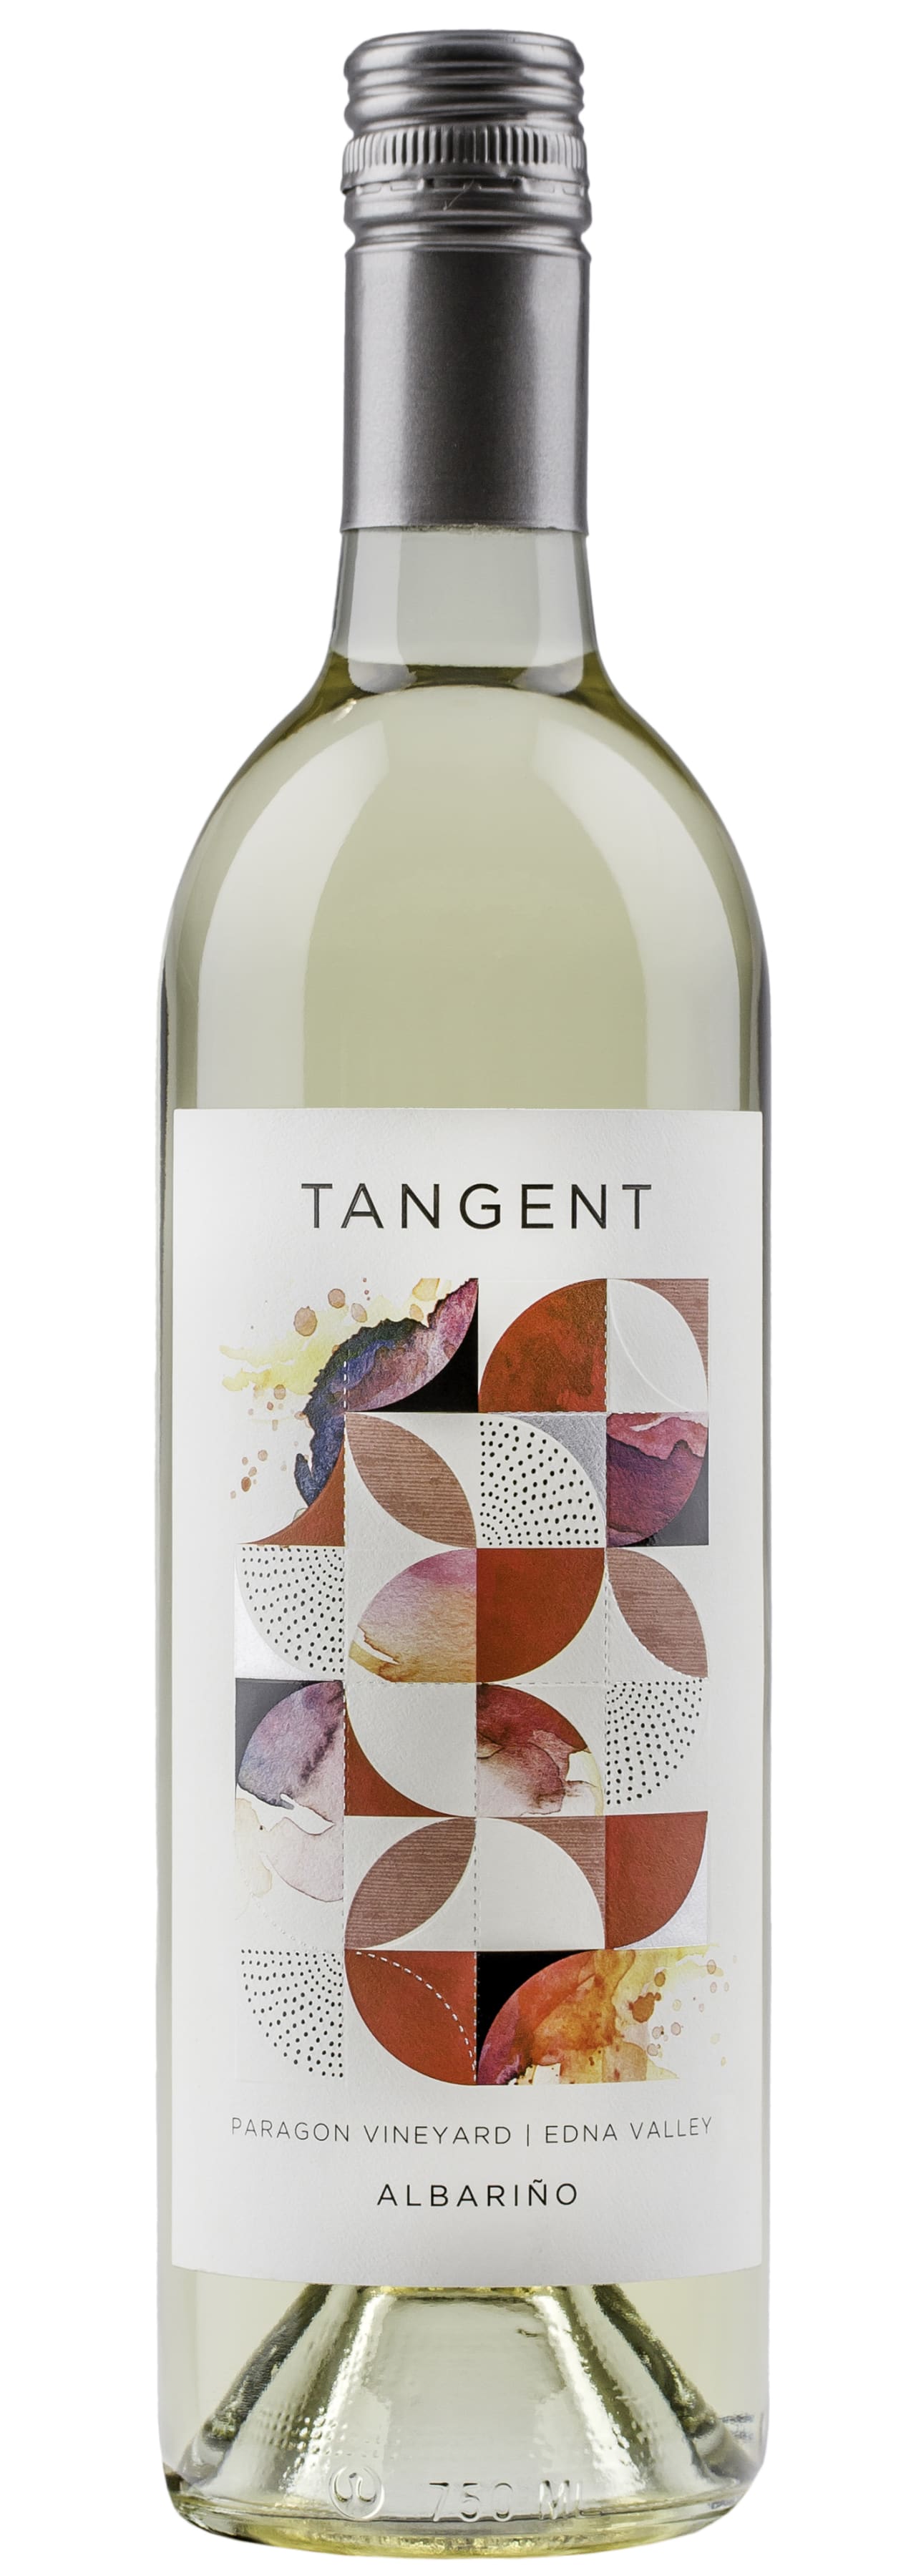 Tangent Albarino Paragon Vineyard 2018